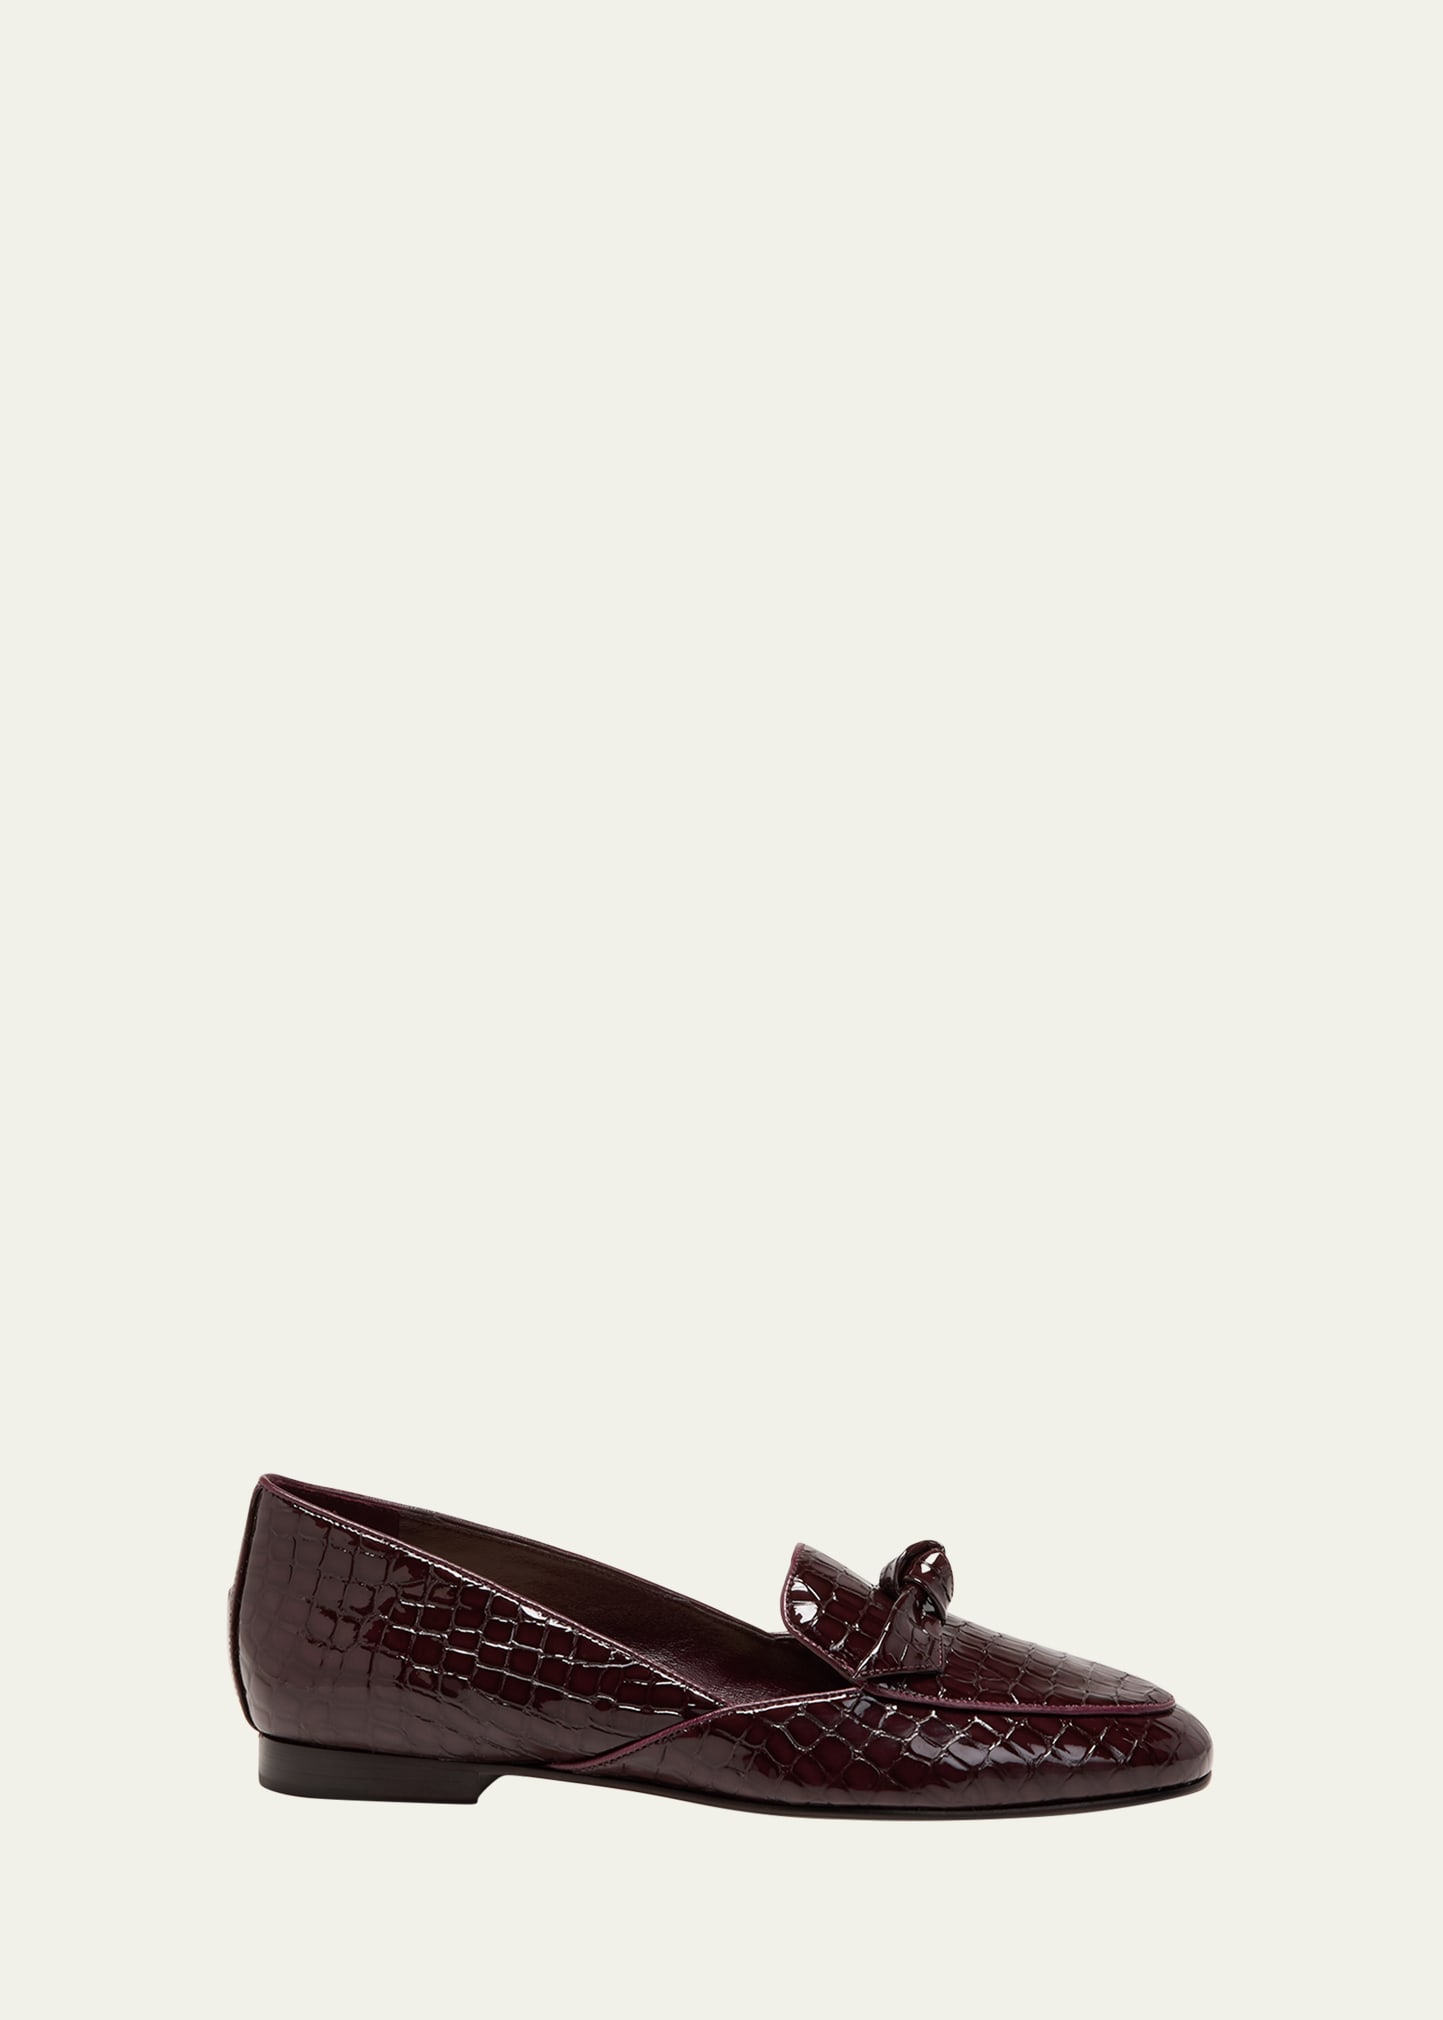 Alexandre Birman Clarita Patent Croco Bow Loafers In Cherry Lacquer